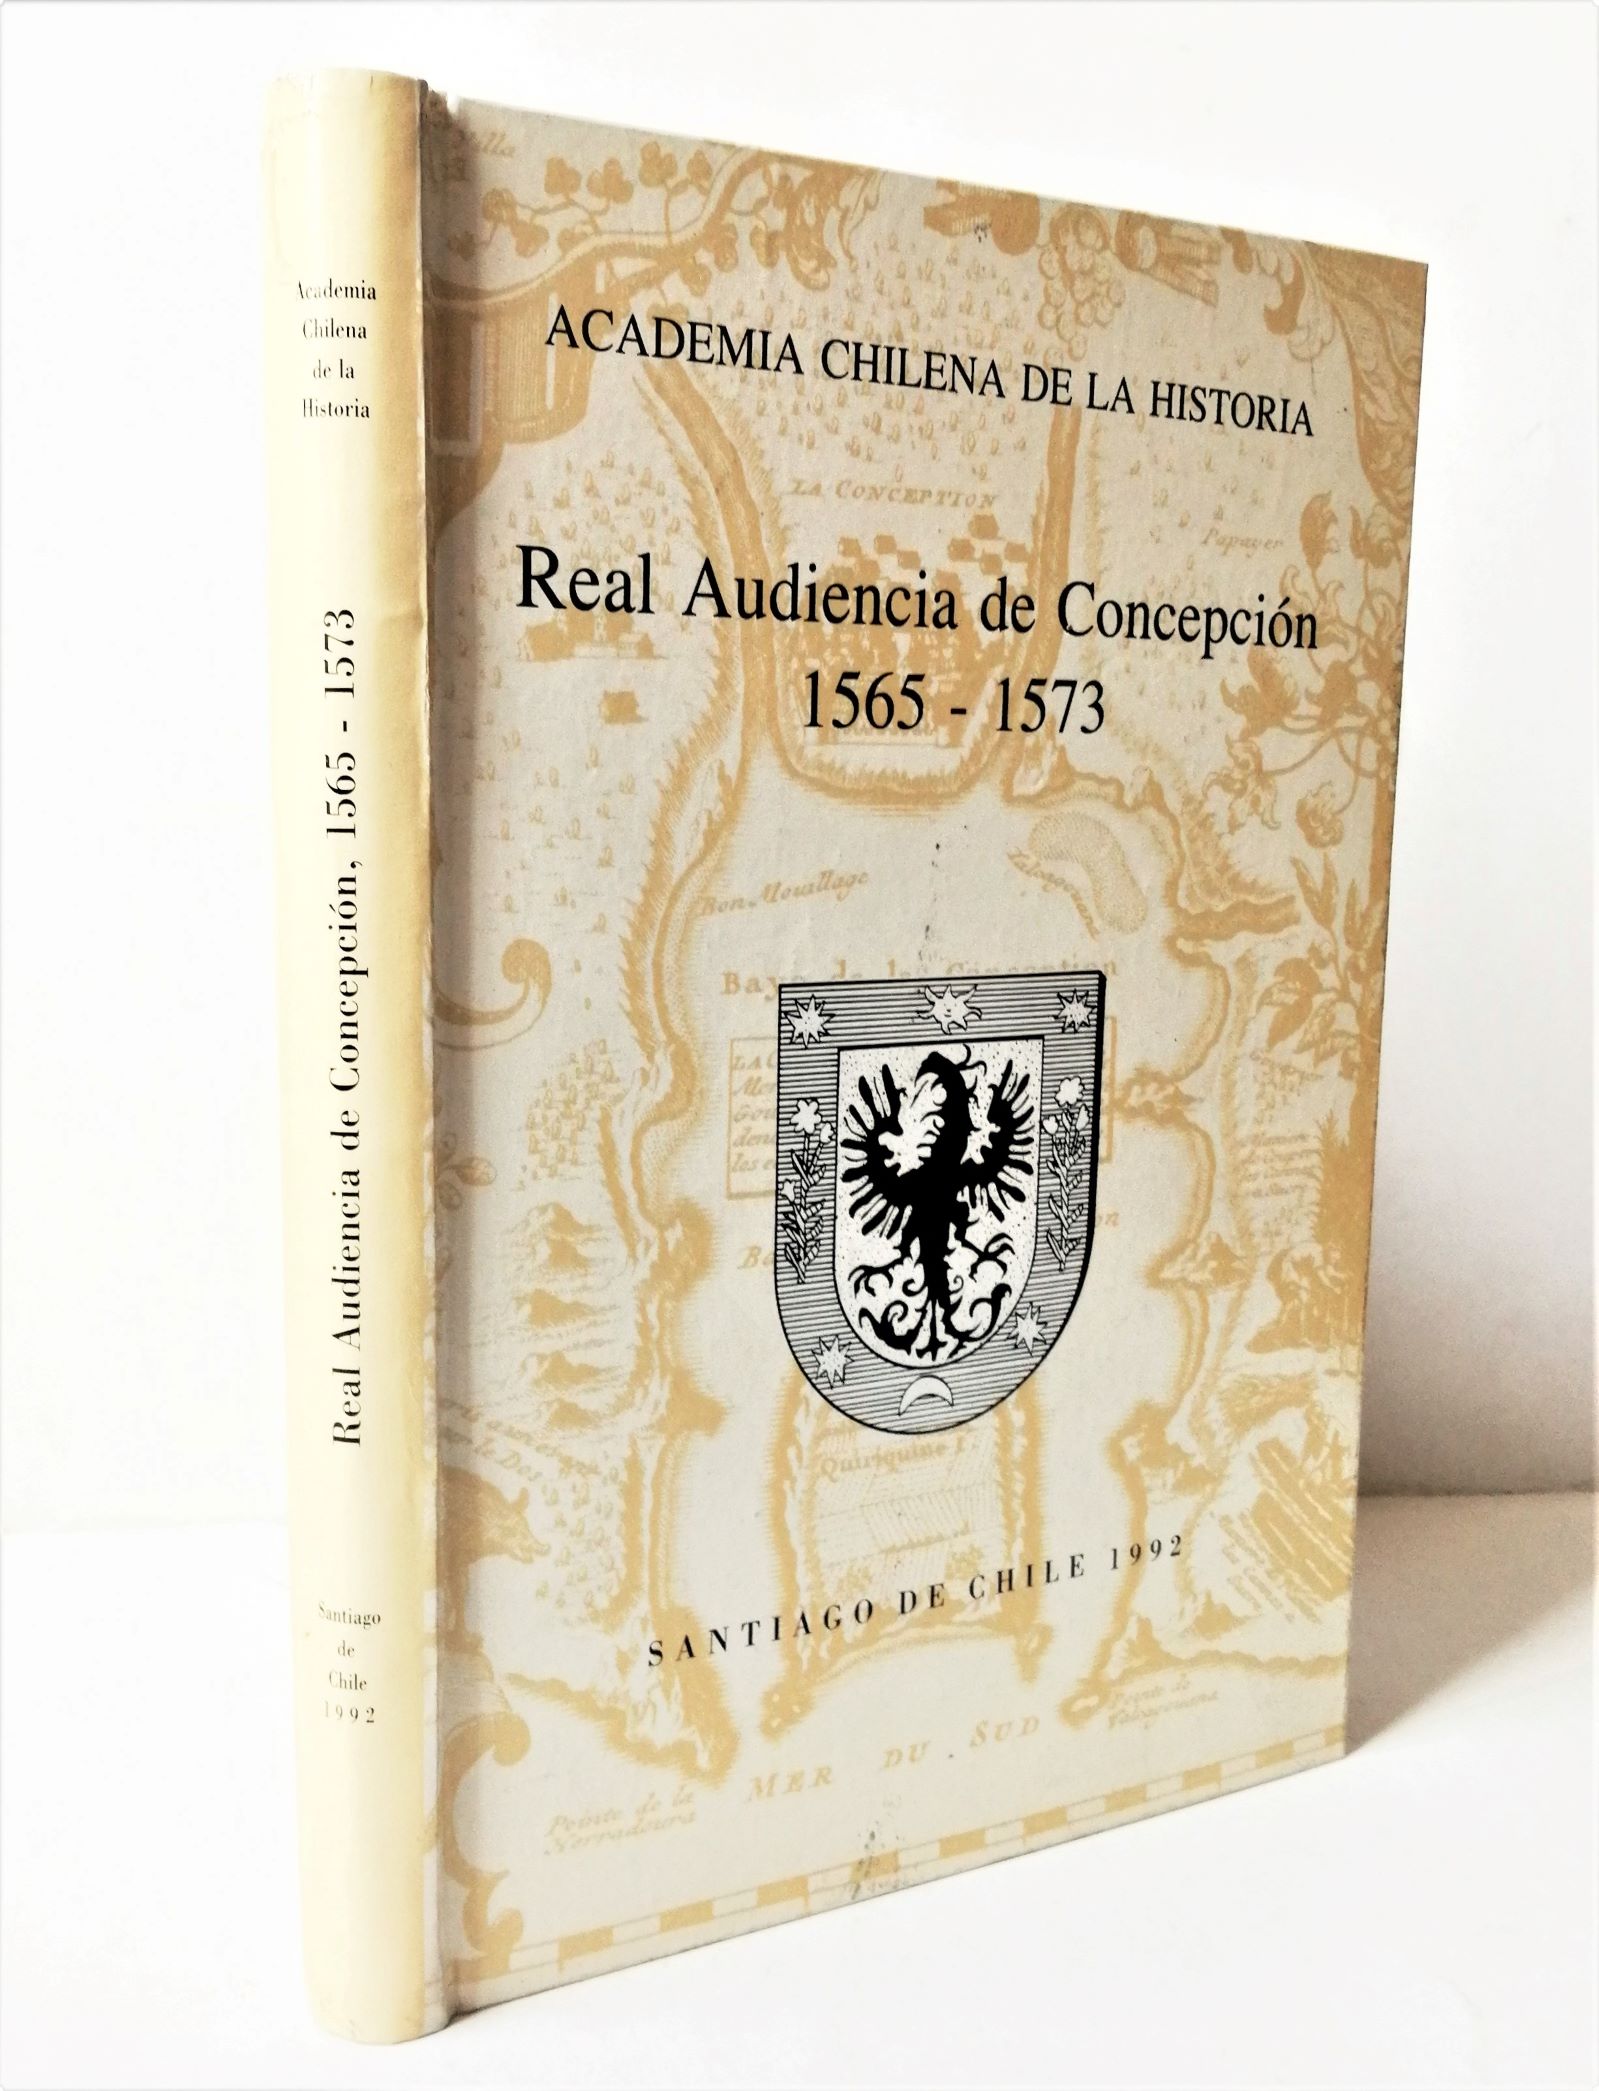 Academia chilena de la historia - Real Audiencia de Concepción 1565 - 1573